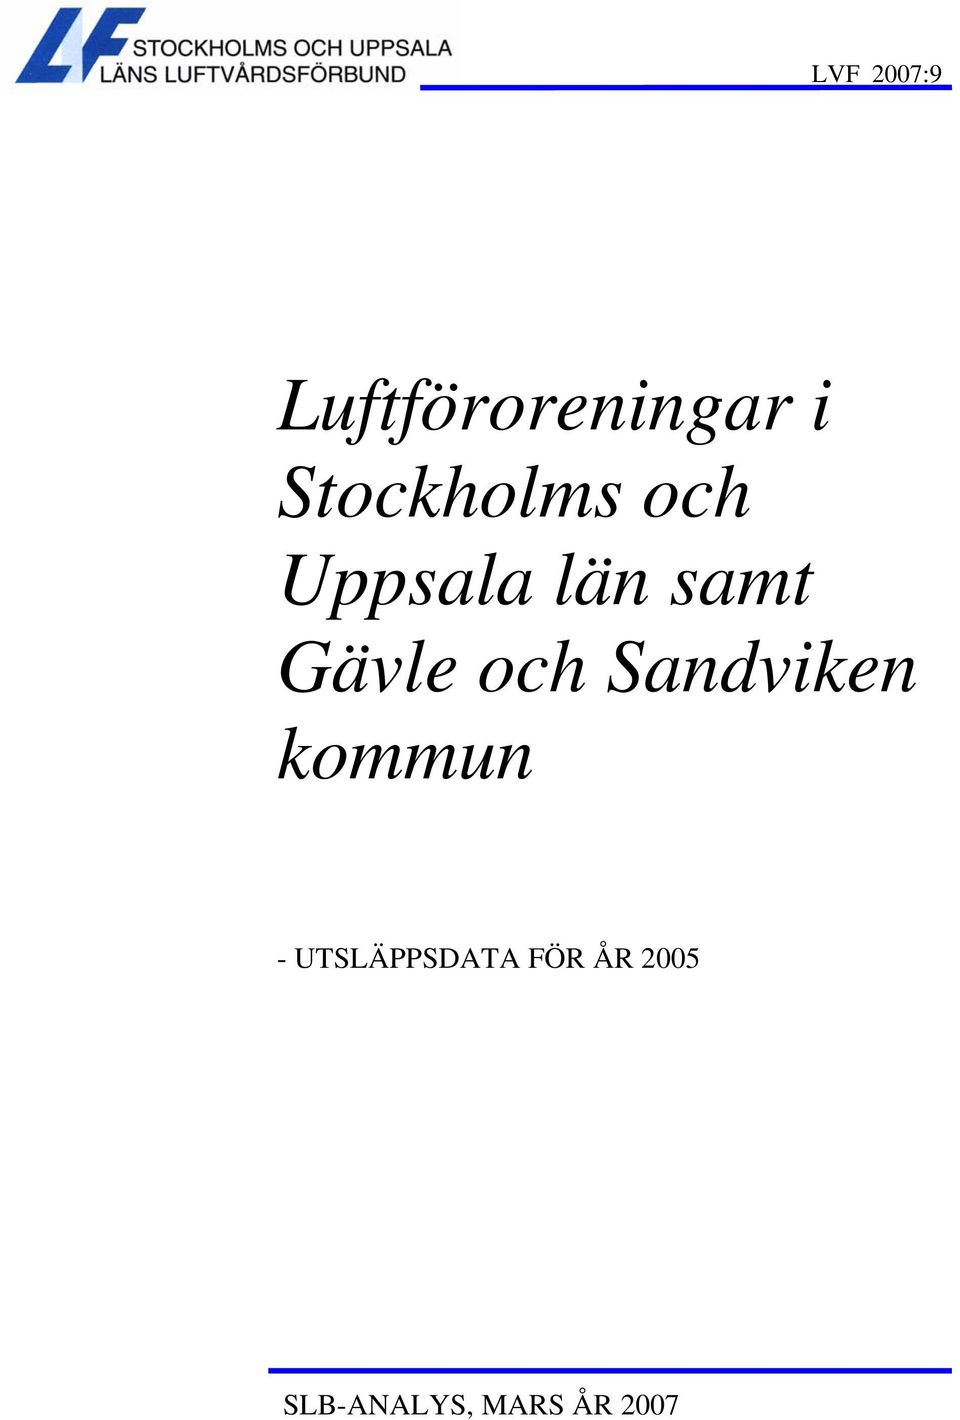 Gävle och Sandviken kommun -